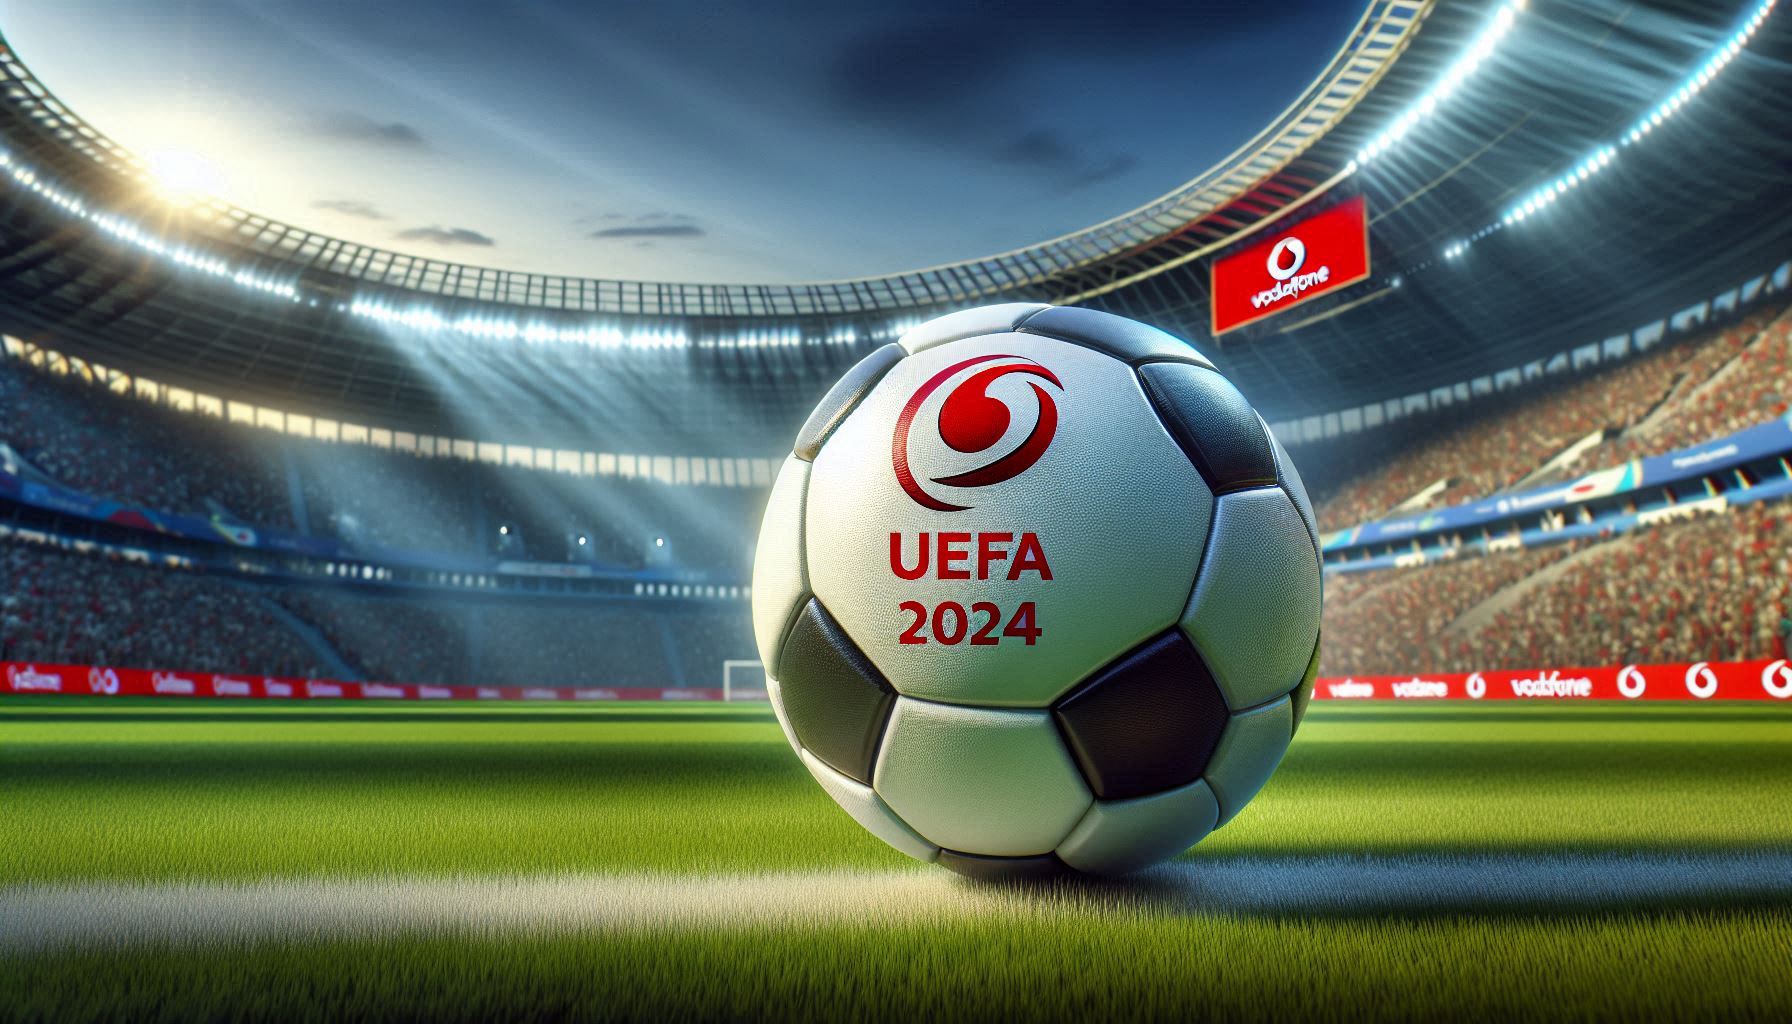 Vodafone Mobilfunknetz: Jahresrekord im Mobilfunknetz durch Fussball EM 2024